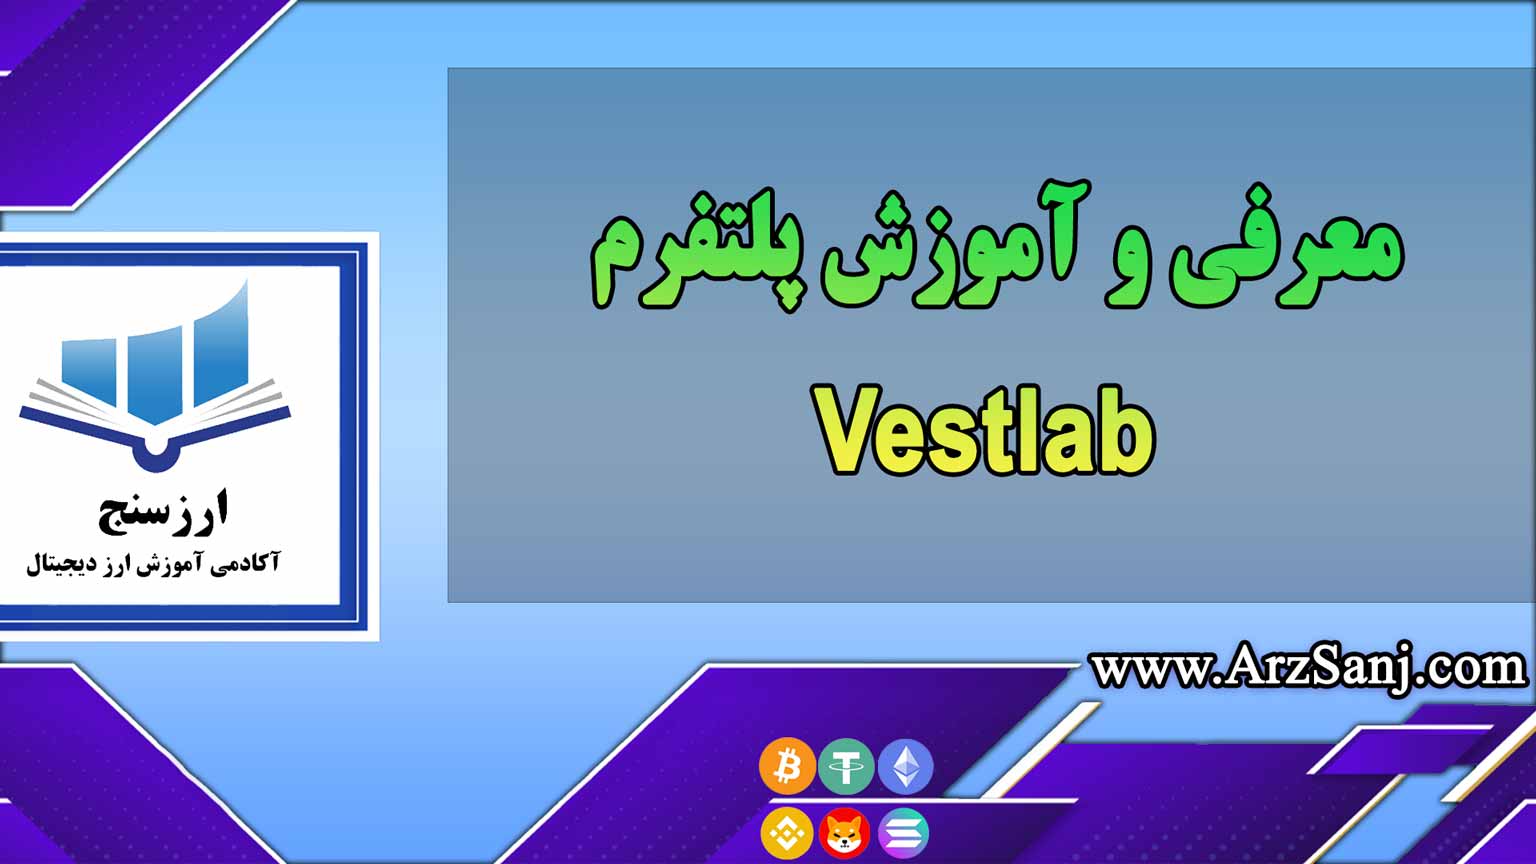 معرفی و آموزش پلتفرم Vestlab